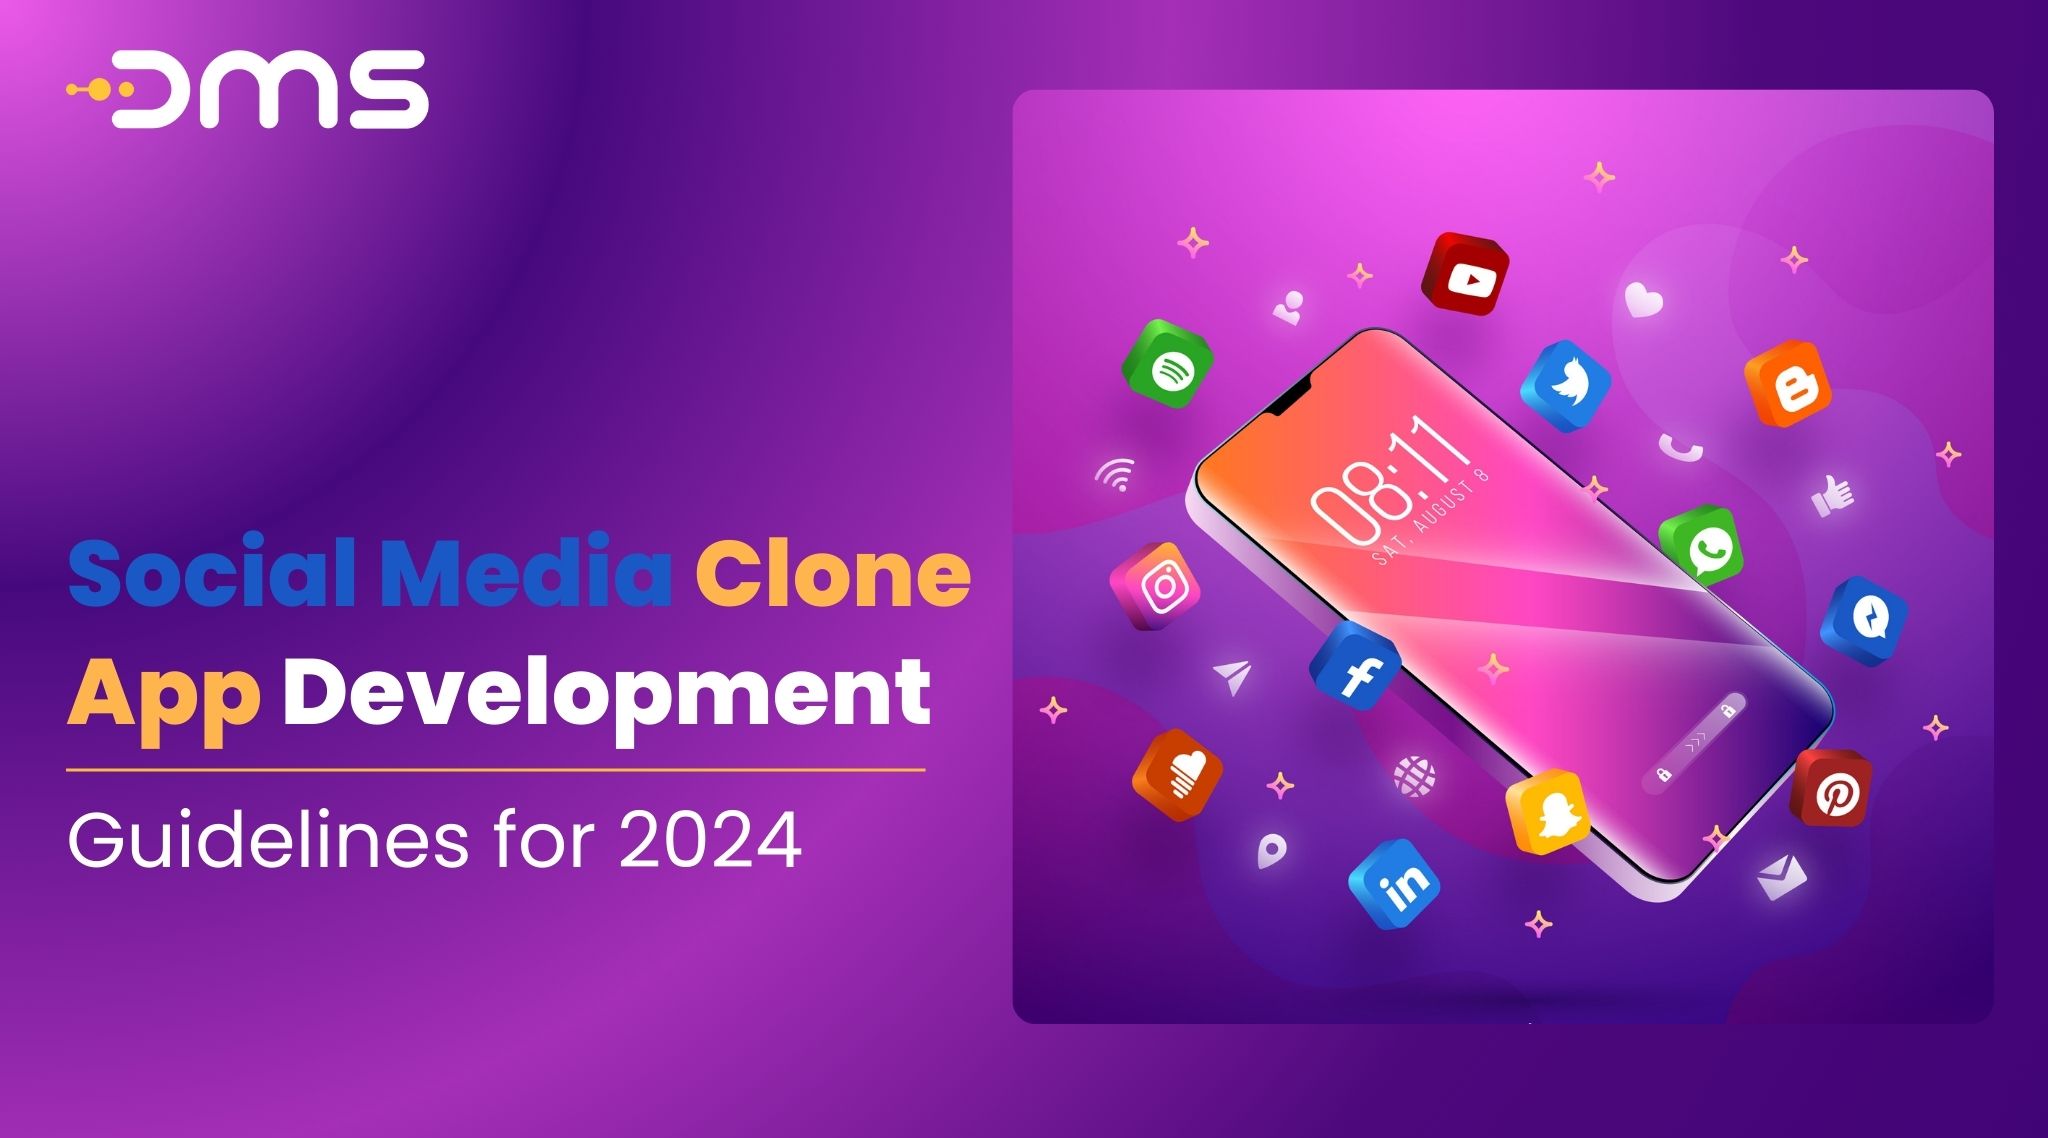 Social Media Clone App Development Guidelines for 2024